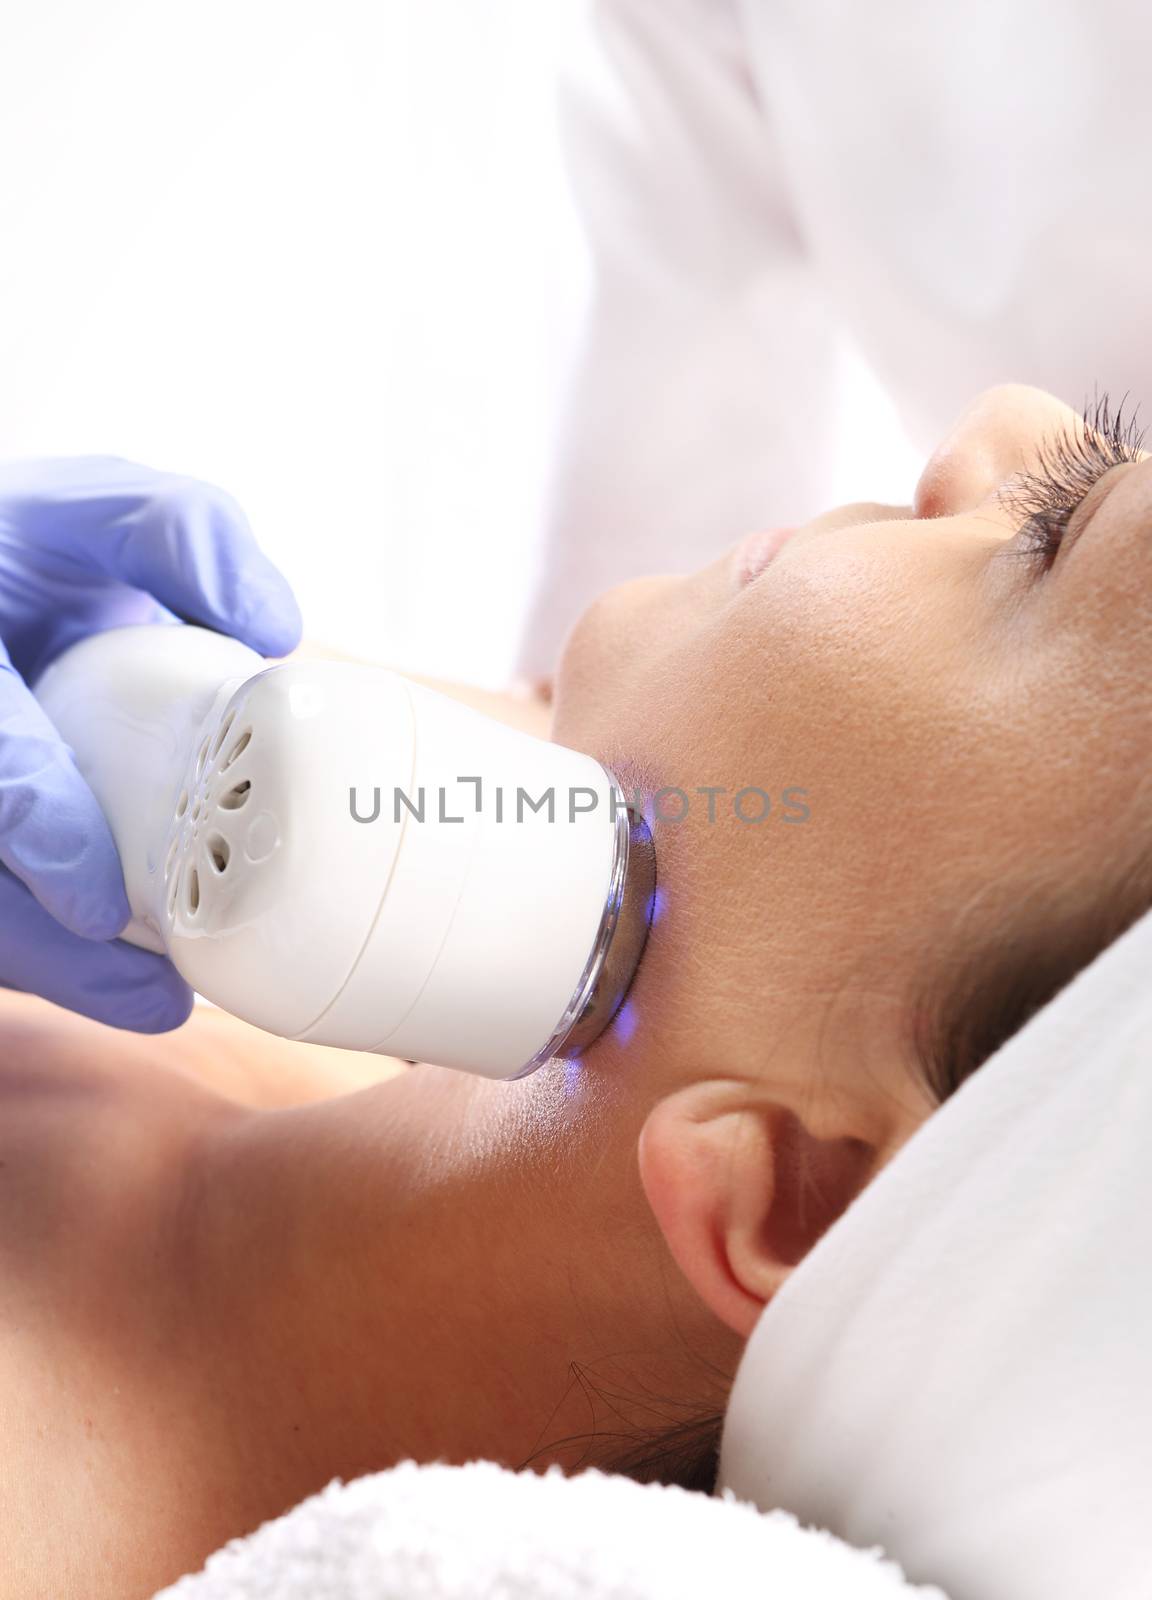 Ultrasound beauty treatment by robert_przybysz